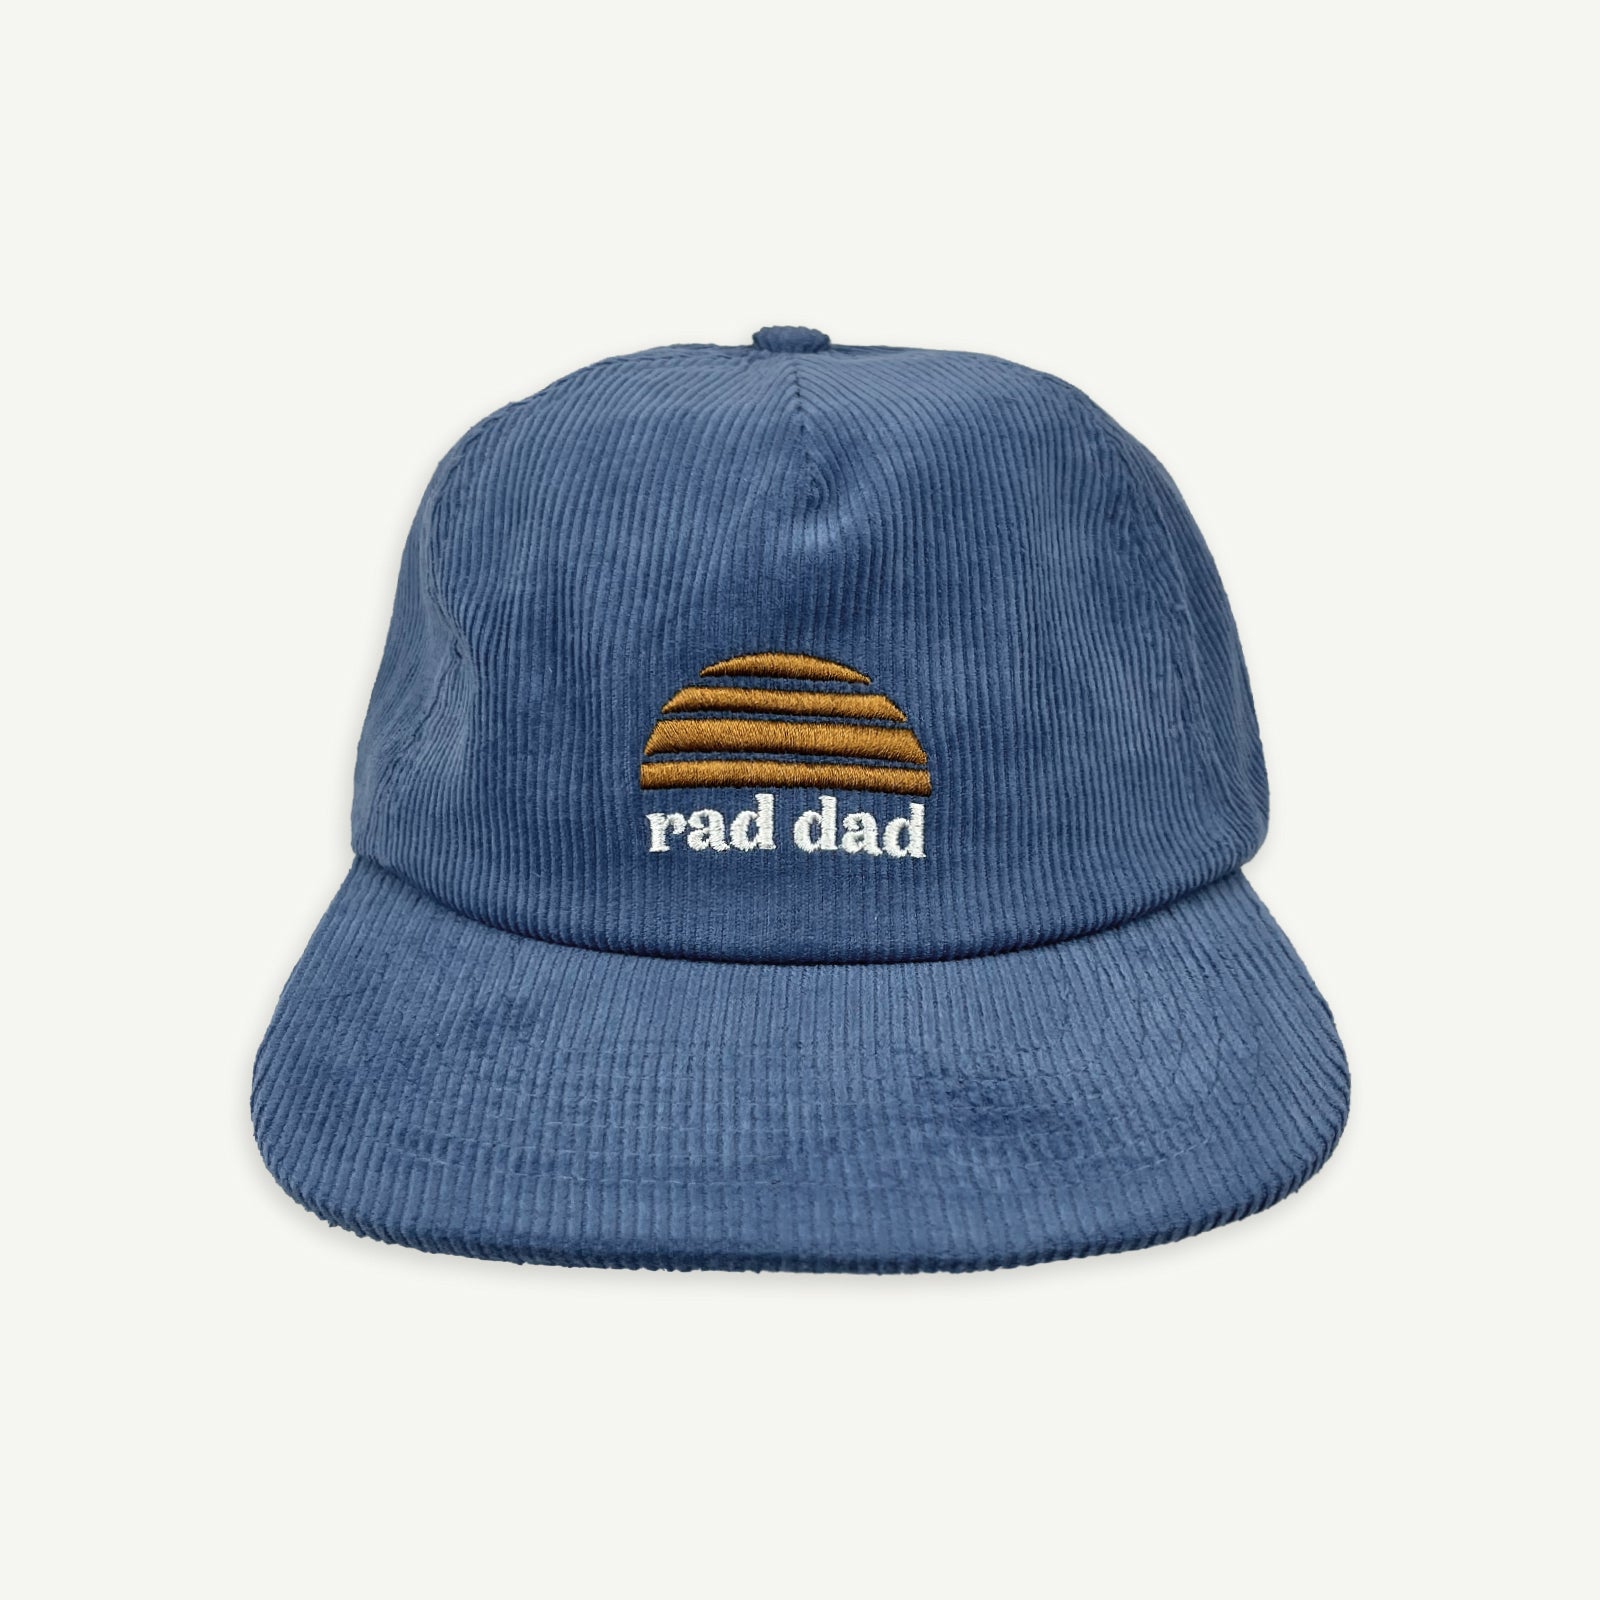 Rad Dad Cord Cap - Denim Blue